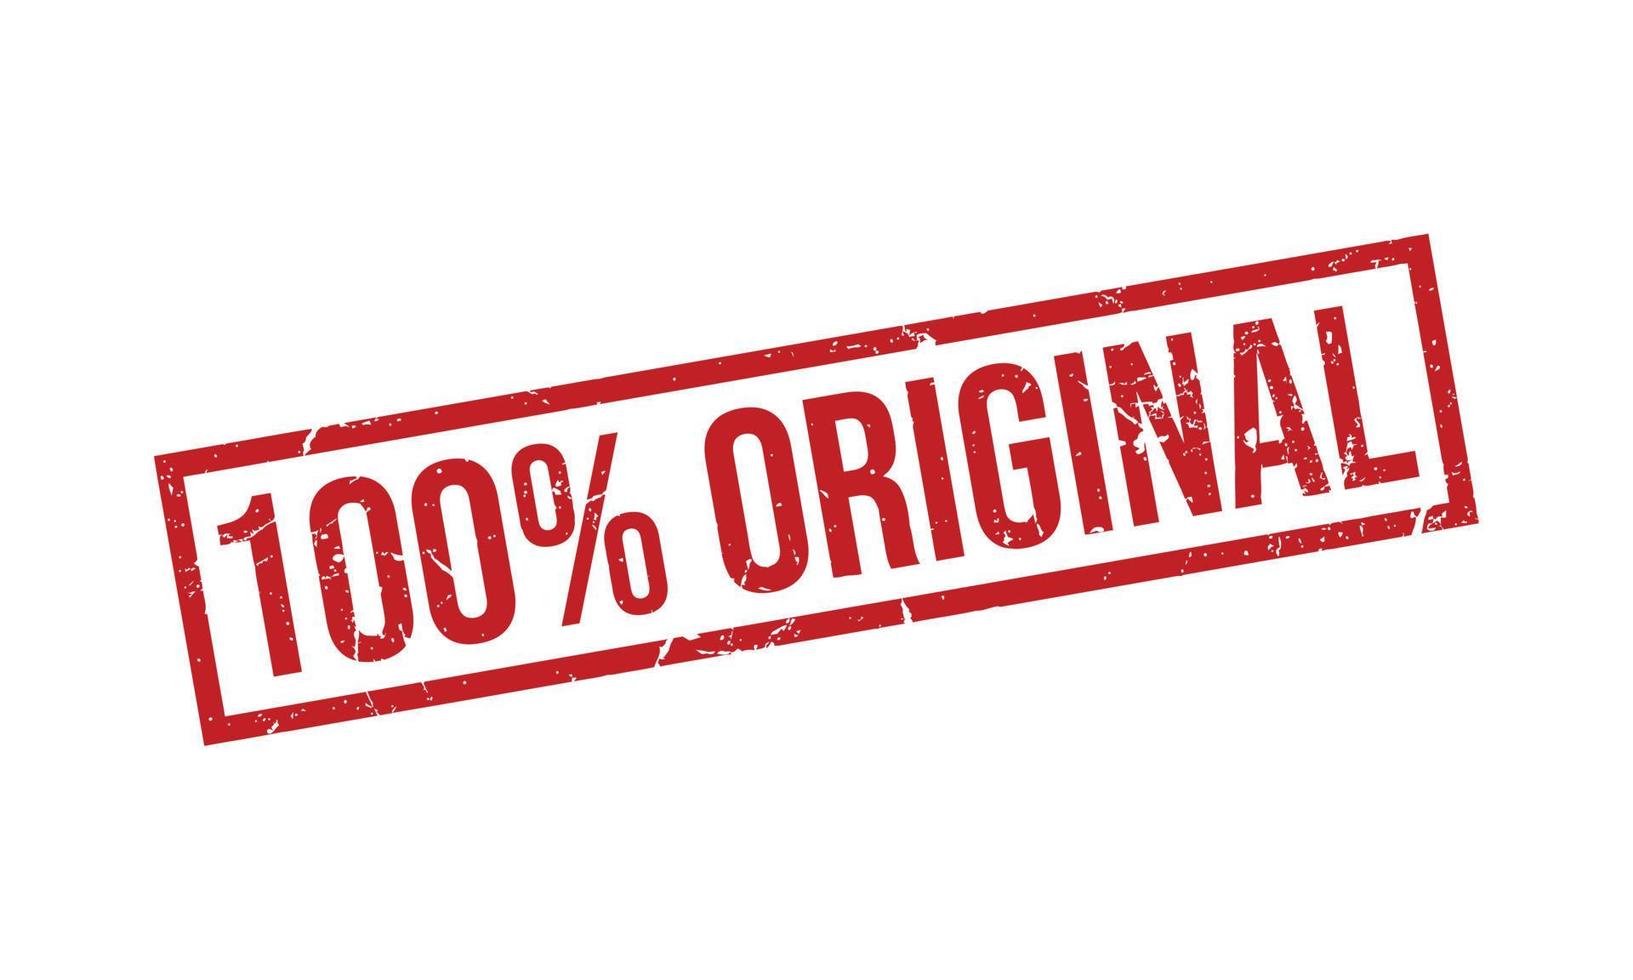 100 por cento original borracha carimbo vetor